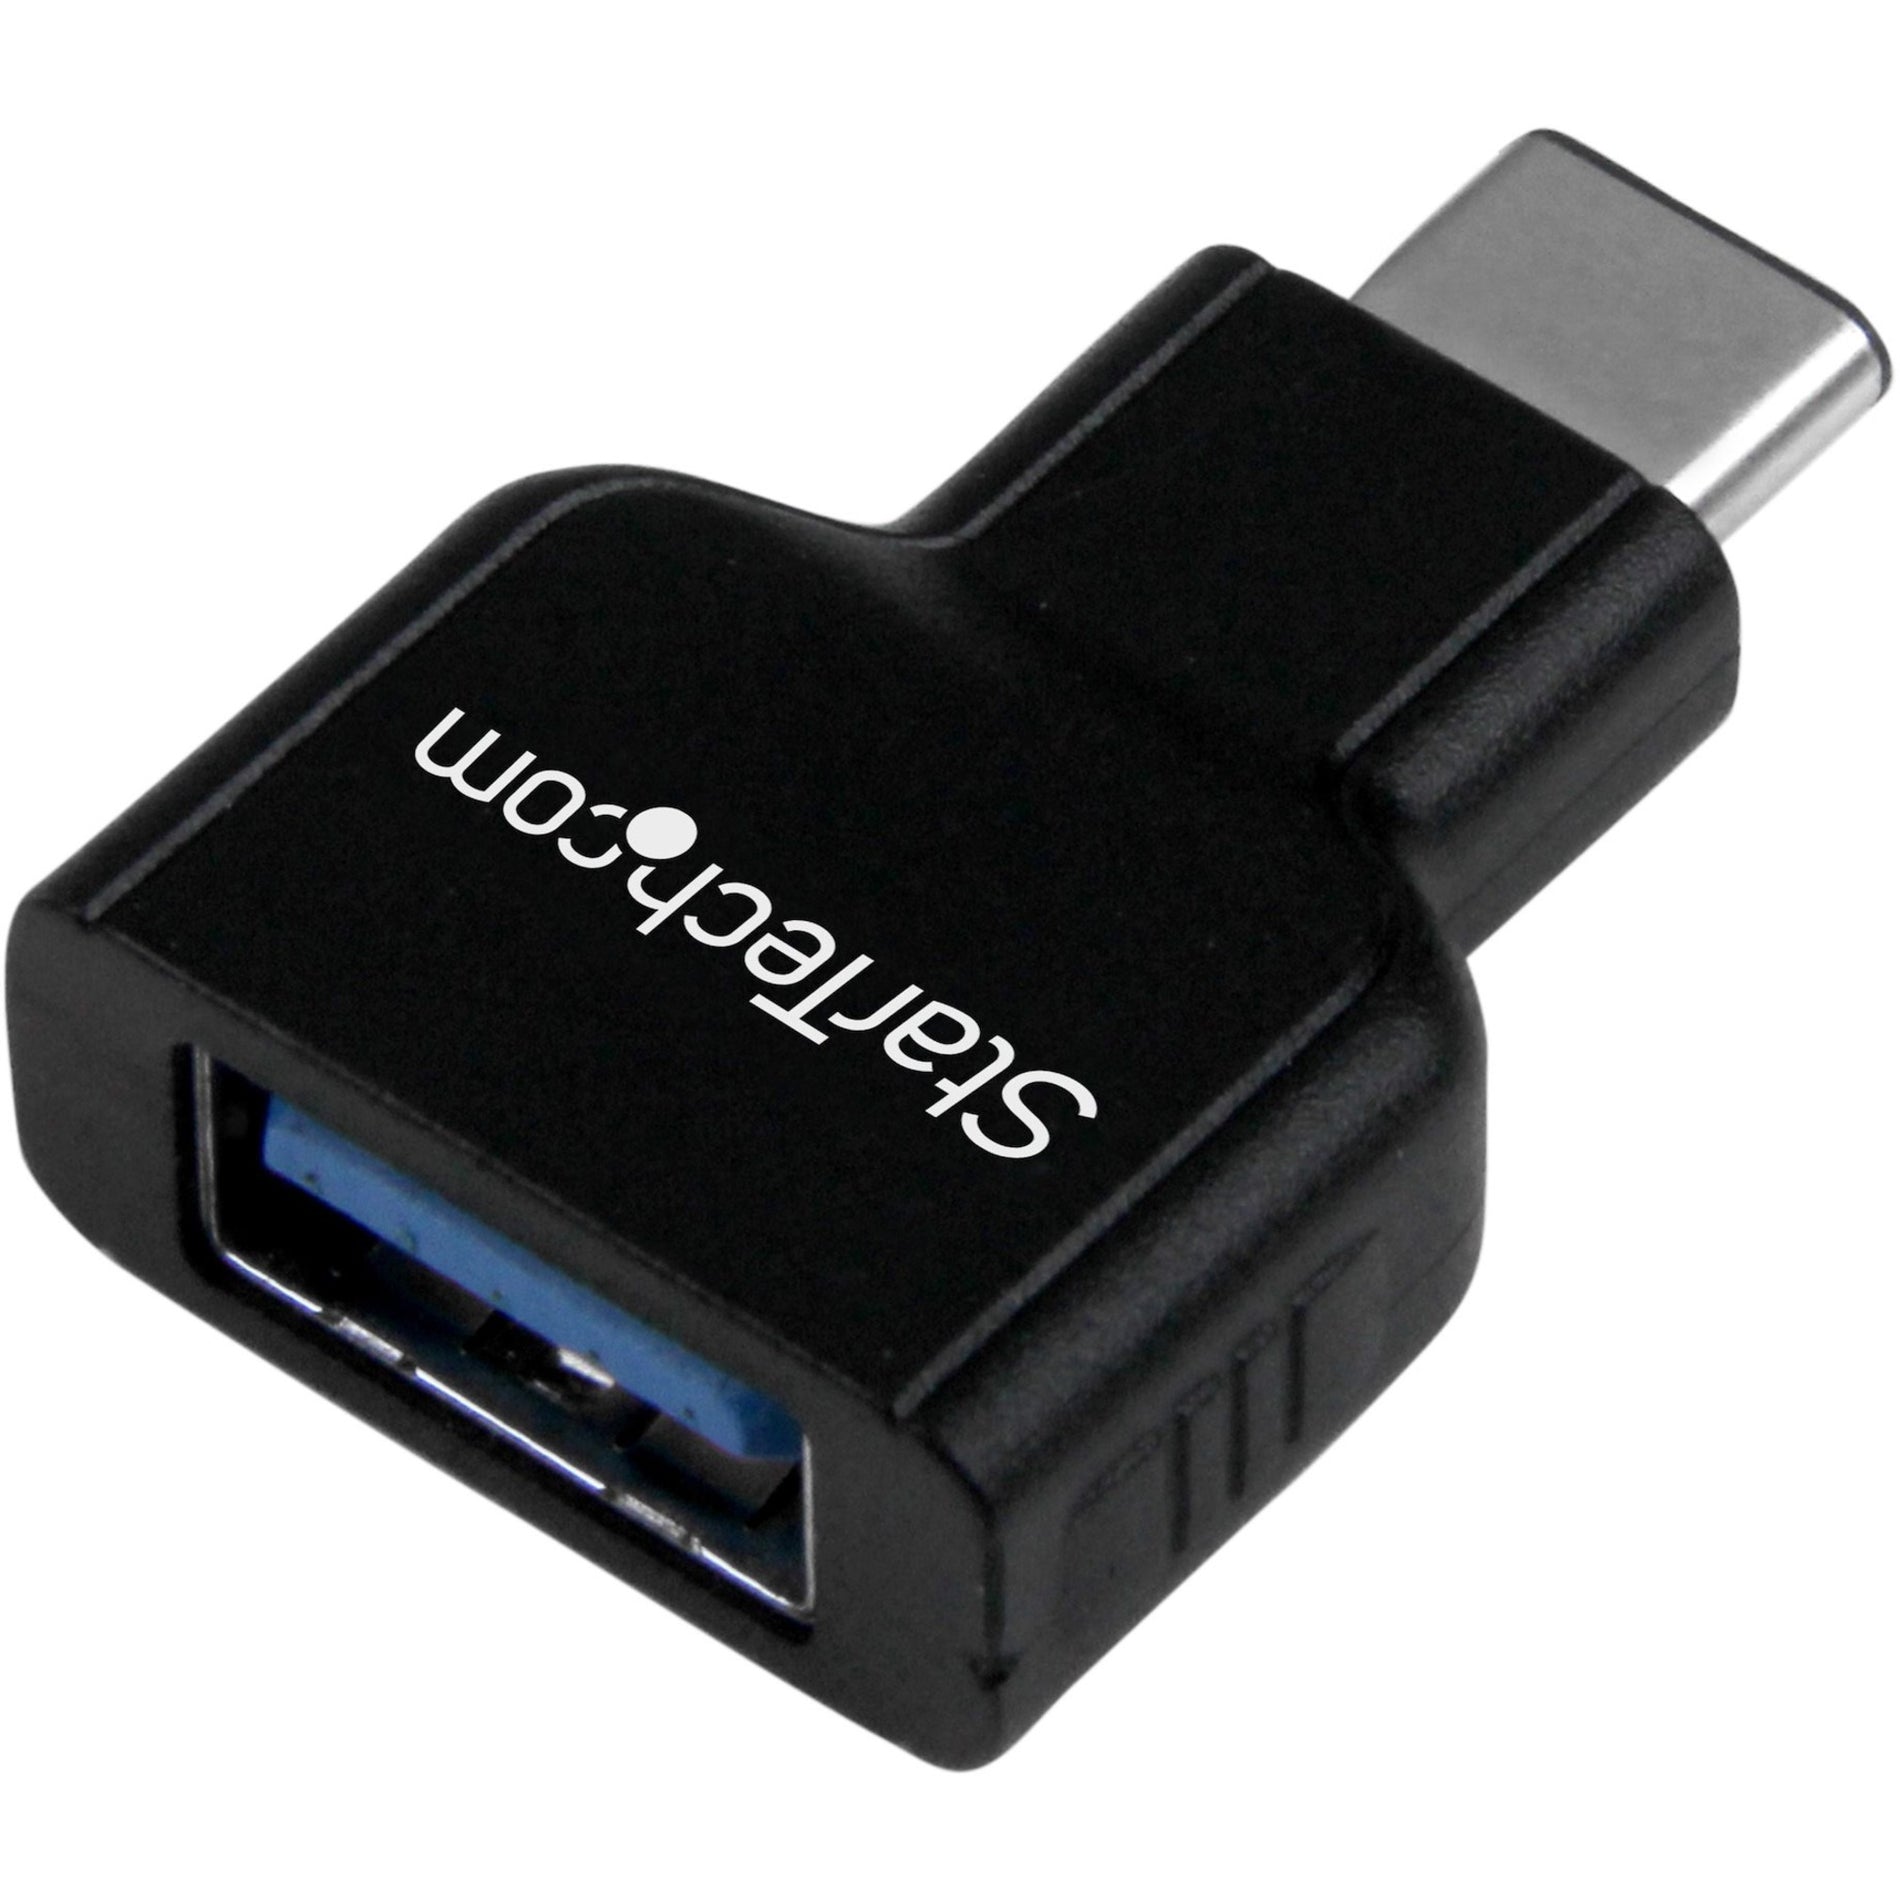 Adaptateur StarTech.com USB31CAADG USB-C vers USB-A M/F - USB 3.0 Se connecter aux ordinateurs portables USB C tels que Apple MacBook Chromebook Pixel et plus